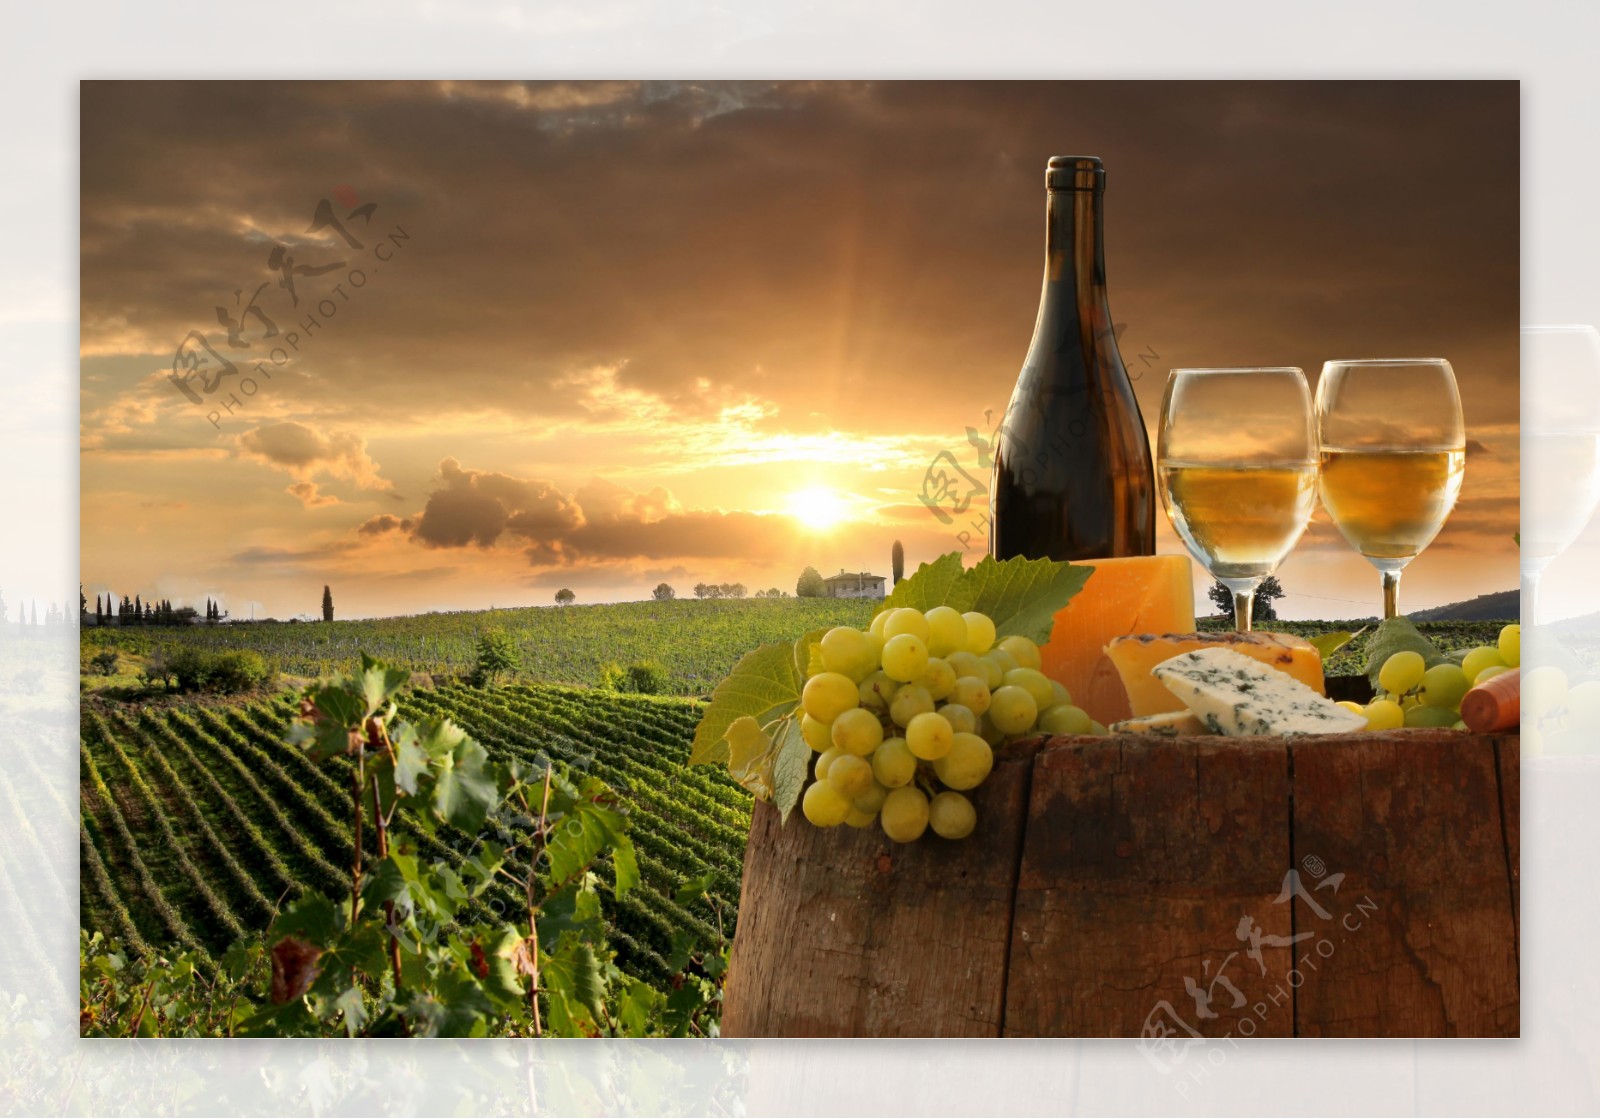 法国葡萄酒庄园图片